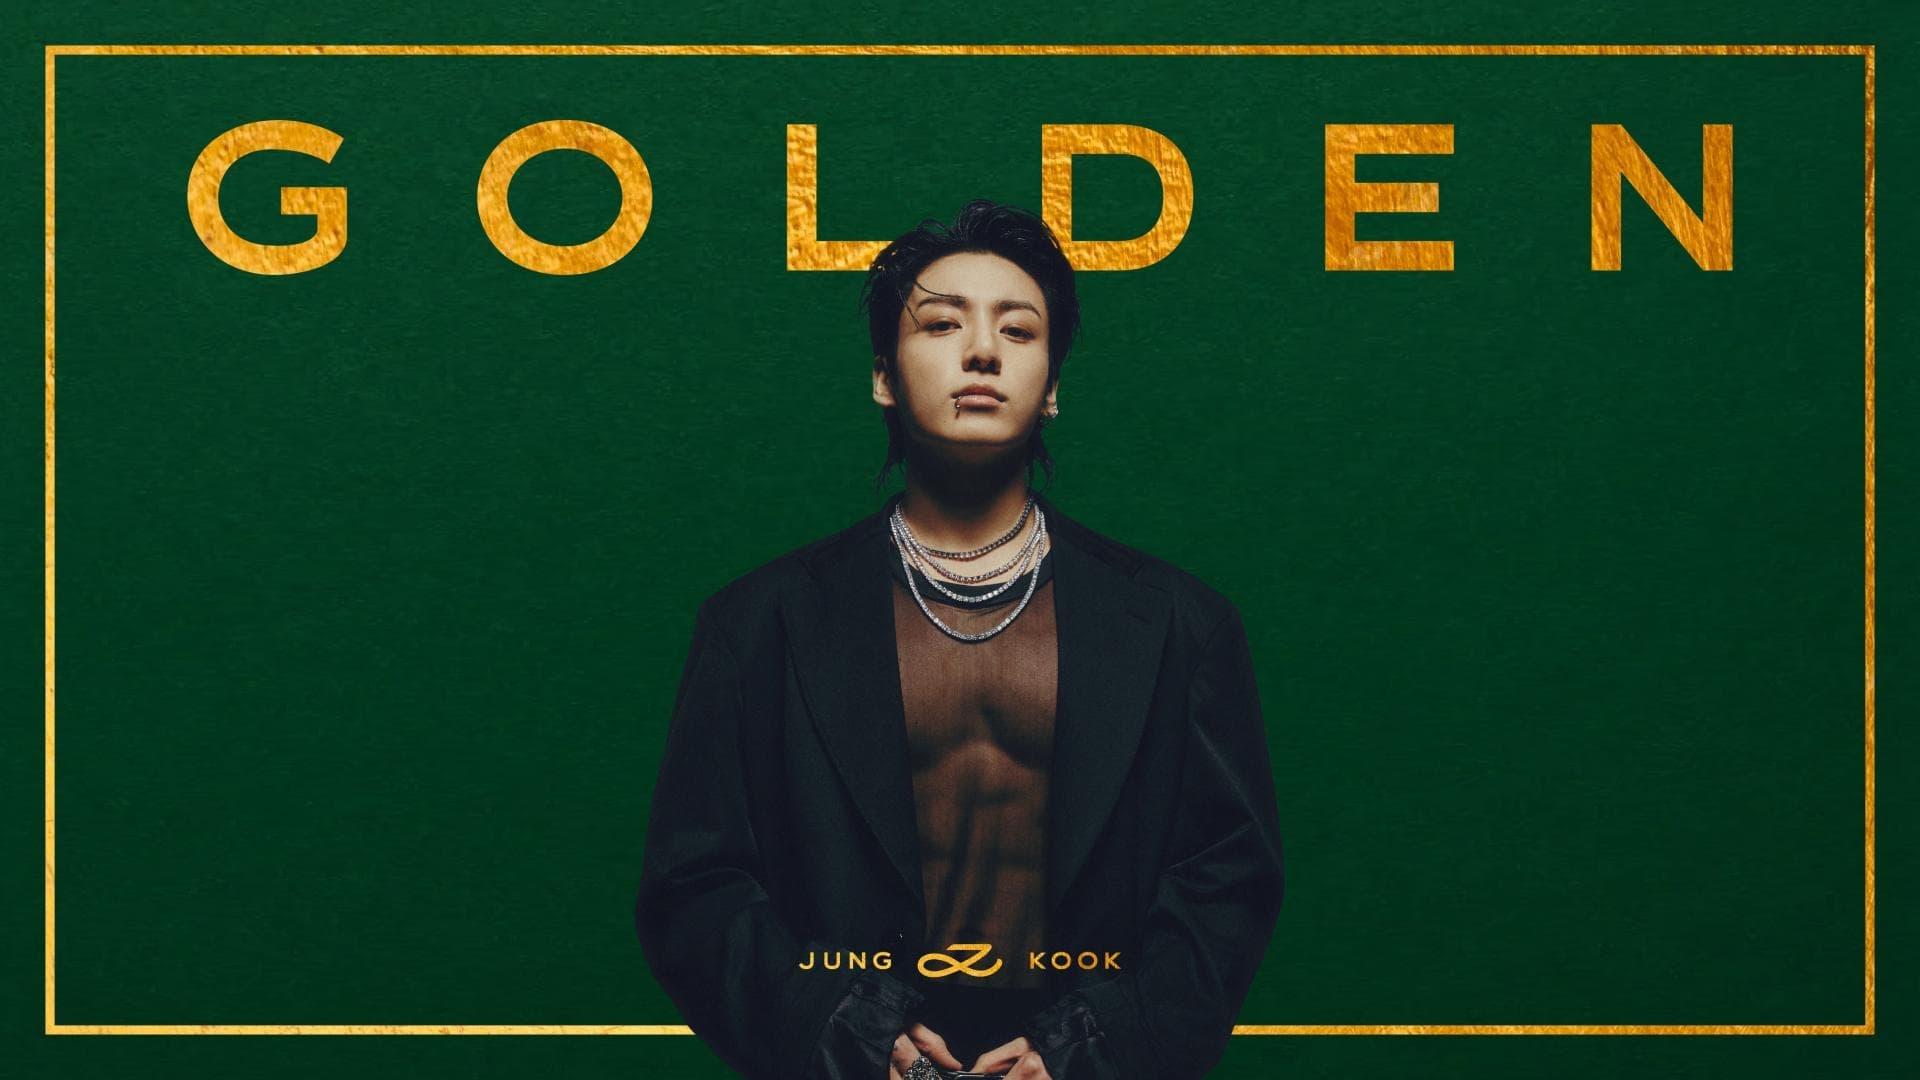 Jung Kook ‘GOLDEN’ Live On Stage backdrop